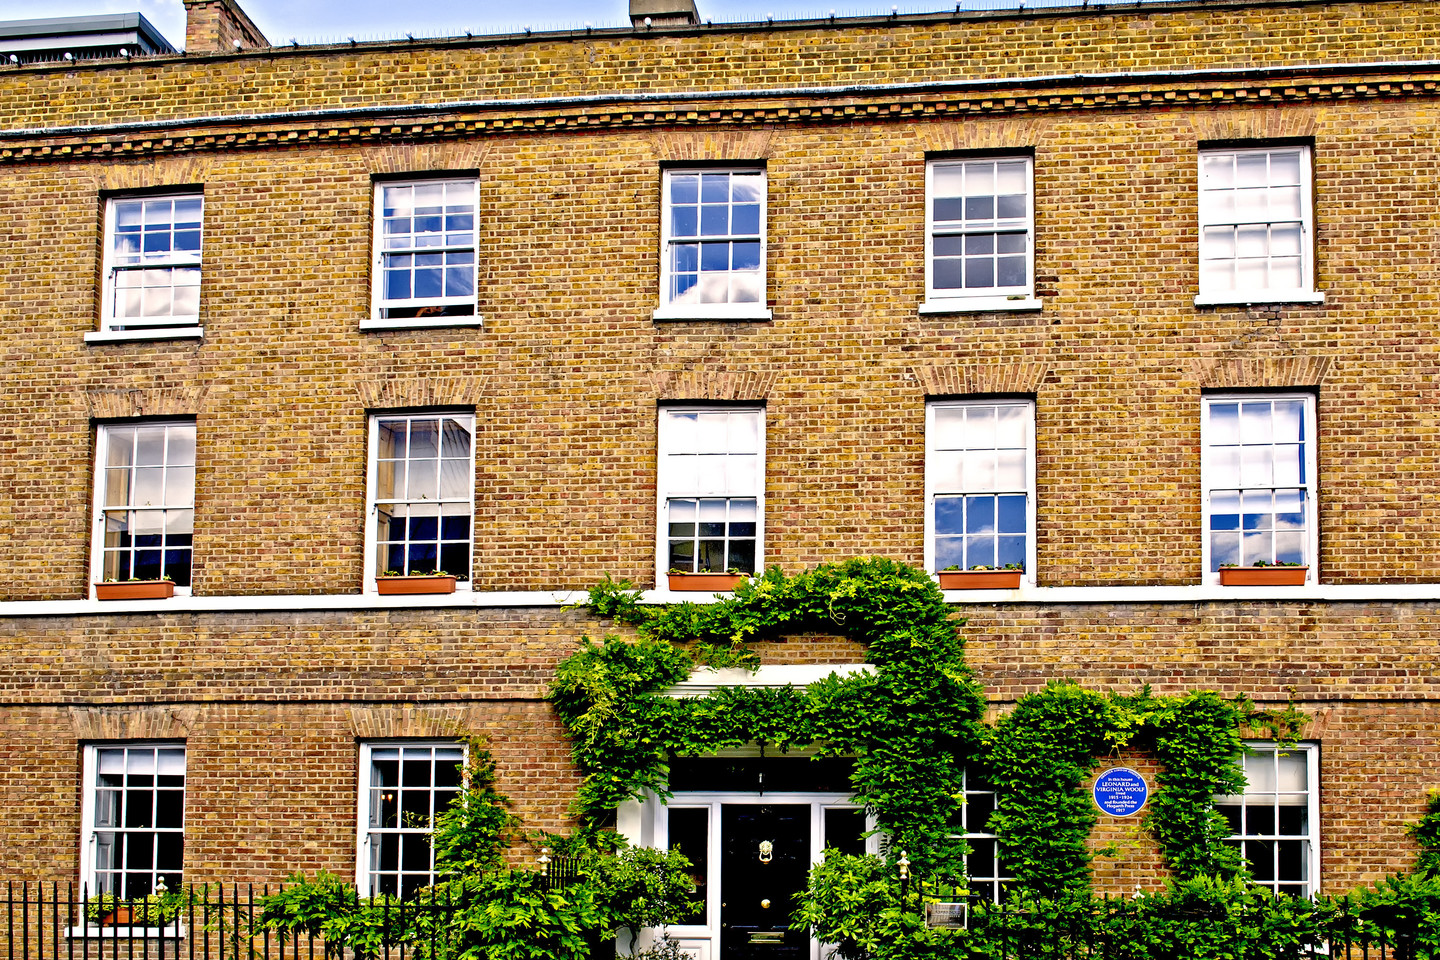  1968 m. „Hogarth House“ pripažintas istorijos ir architektūros paminklu.<br> Vidapress.com nuotr.